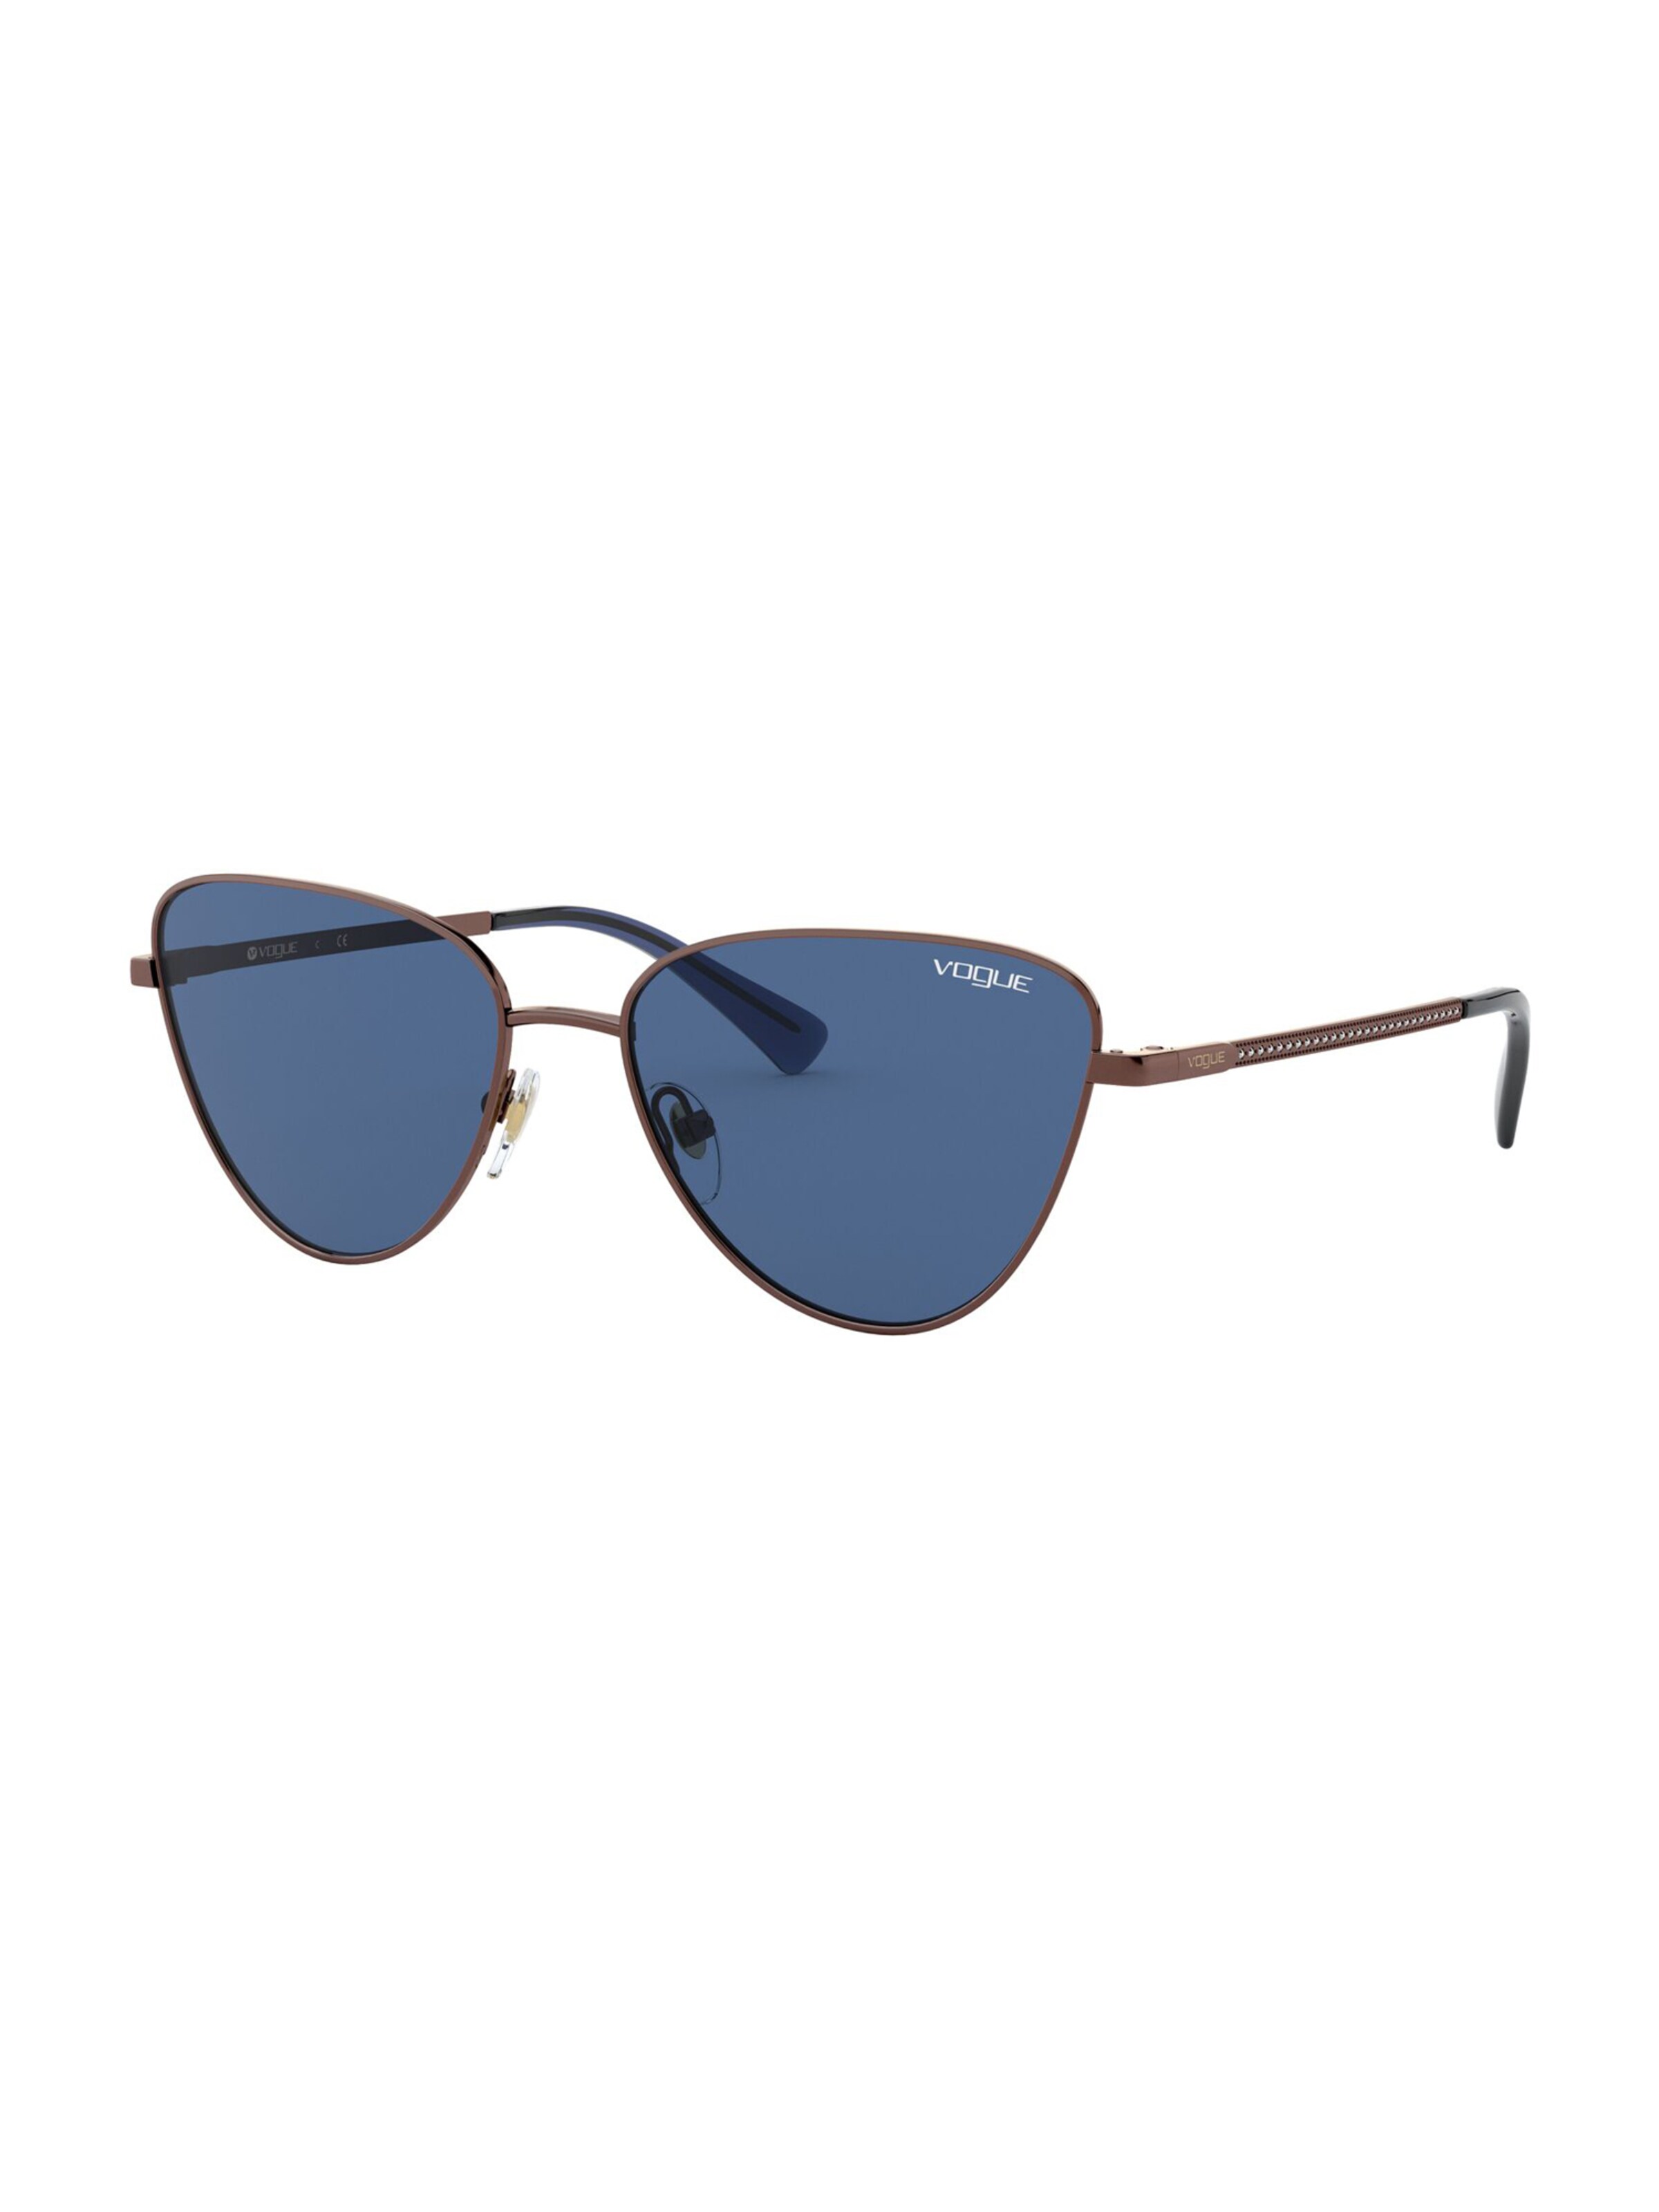 Frauen Sonnenbrillen VOGUE Eyewear Sonnenbrille in Blau - XX69958